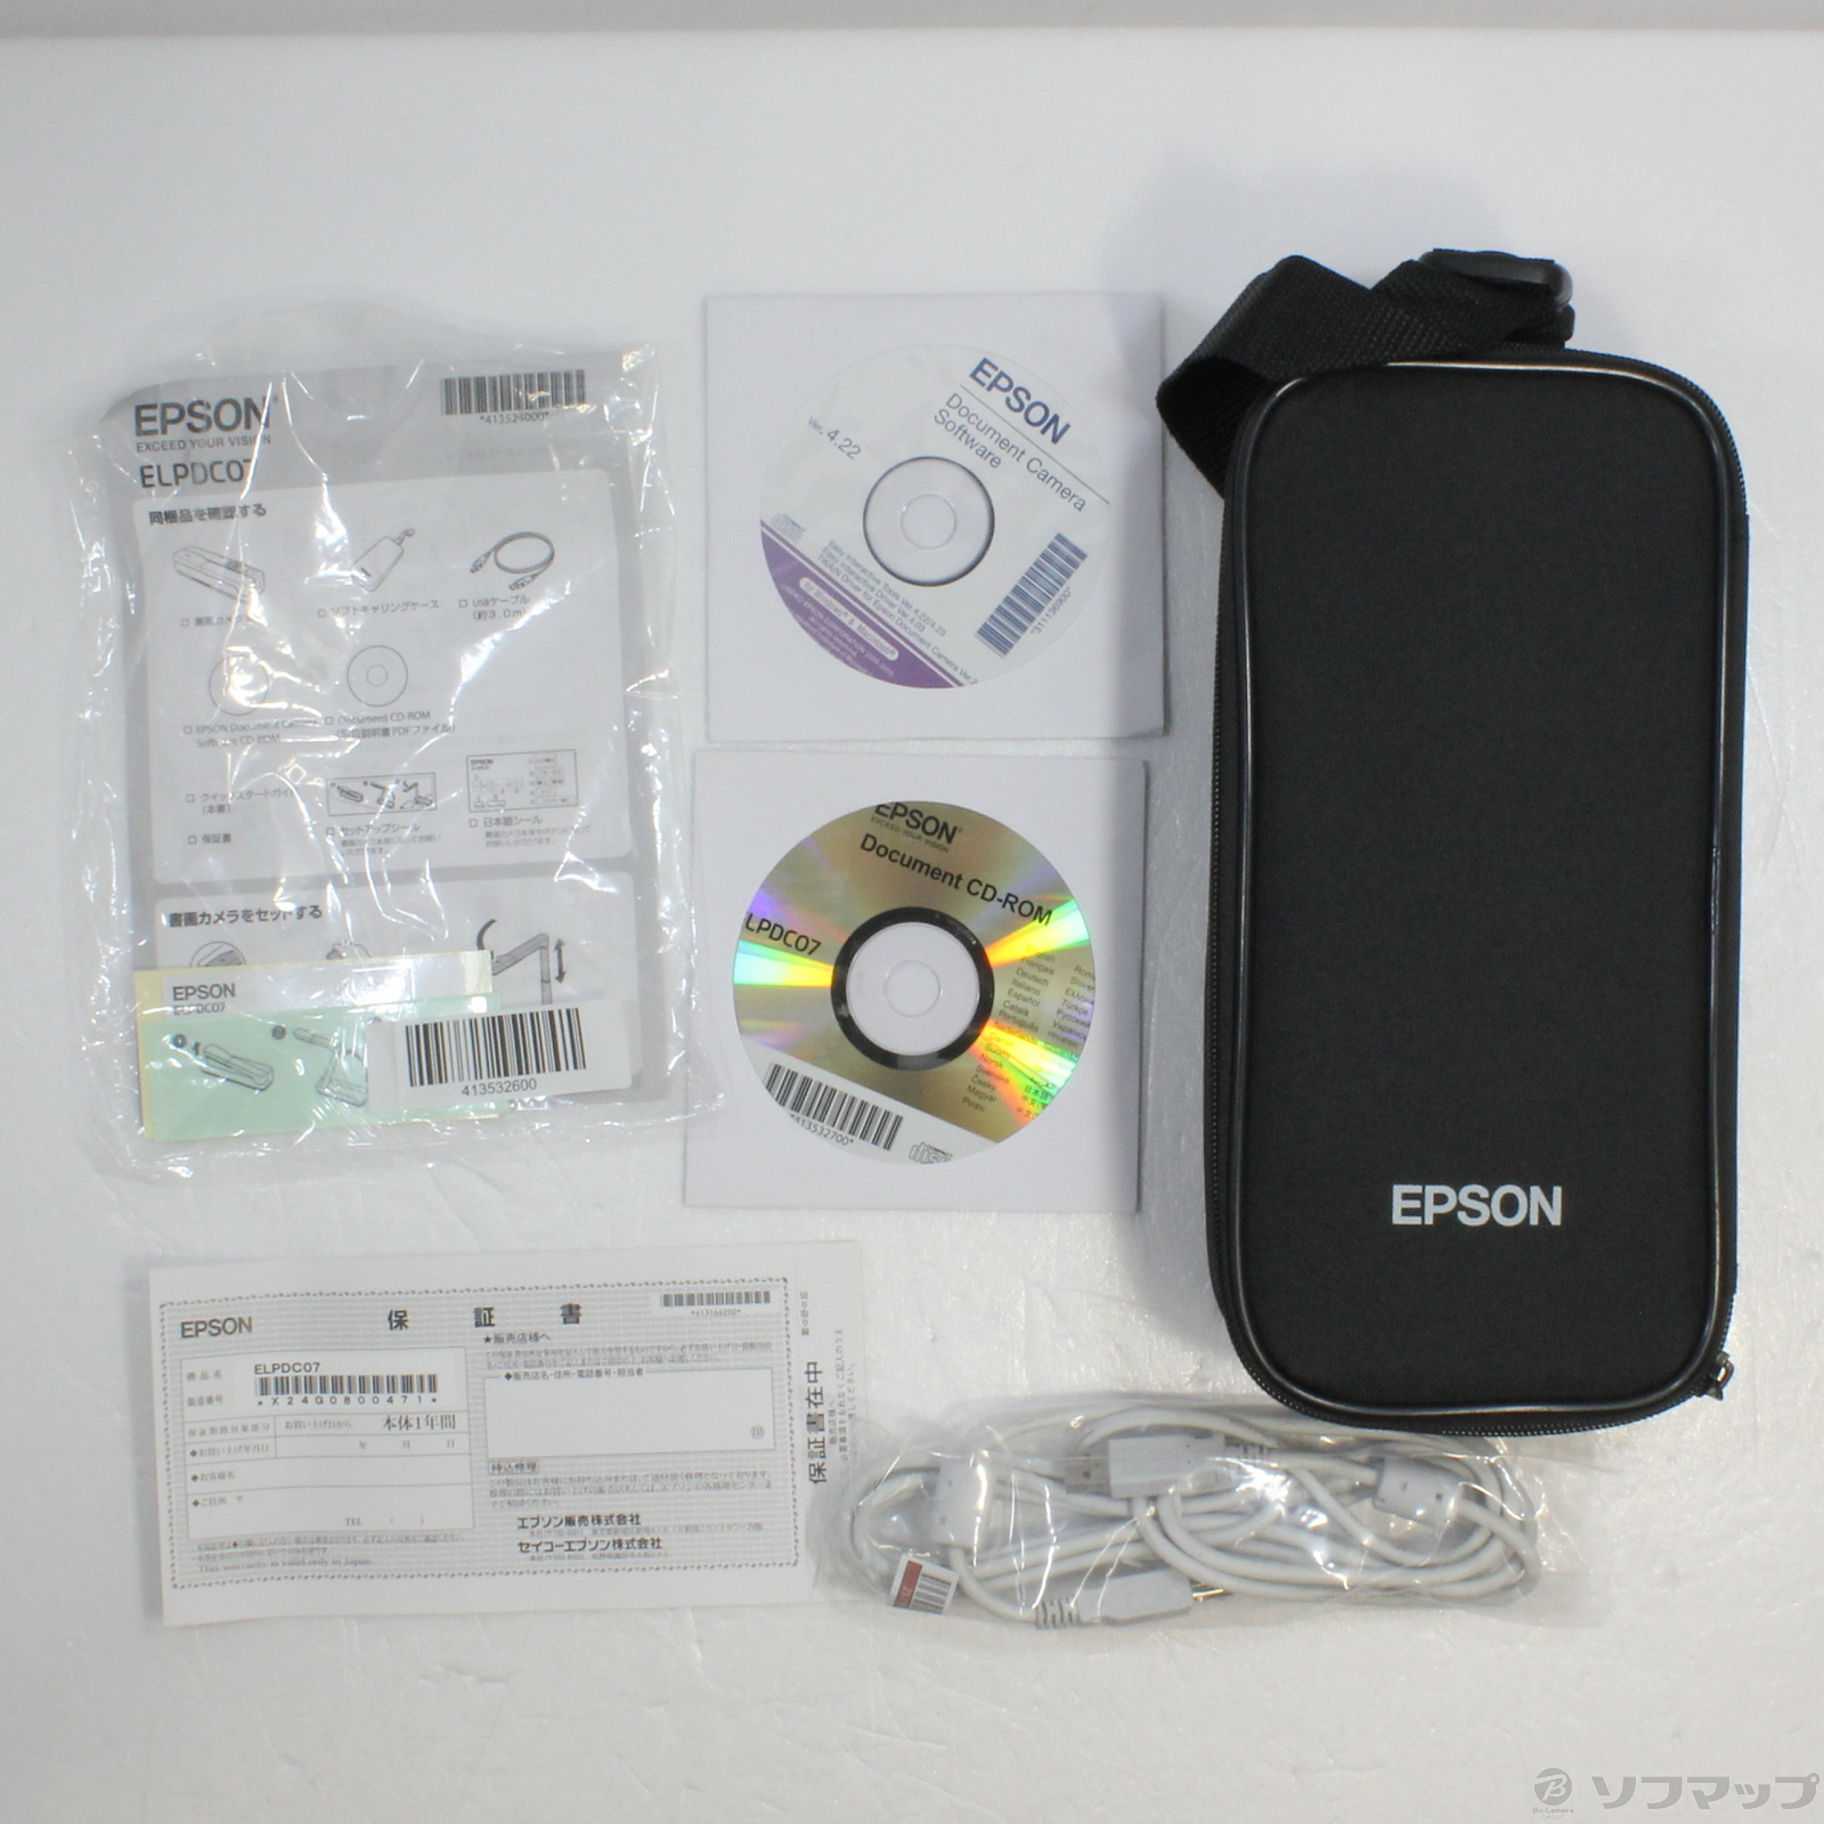 エプソン プロジェクター 書画カメラ ELPDC07 (最大8倍デジタルズーム 最大撮像サイズB4) - 3